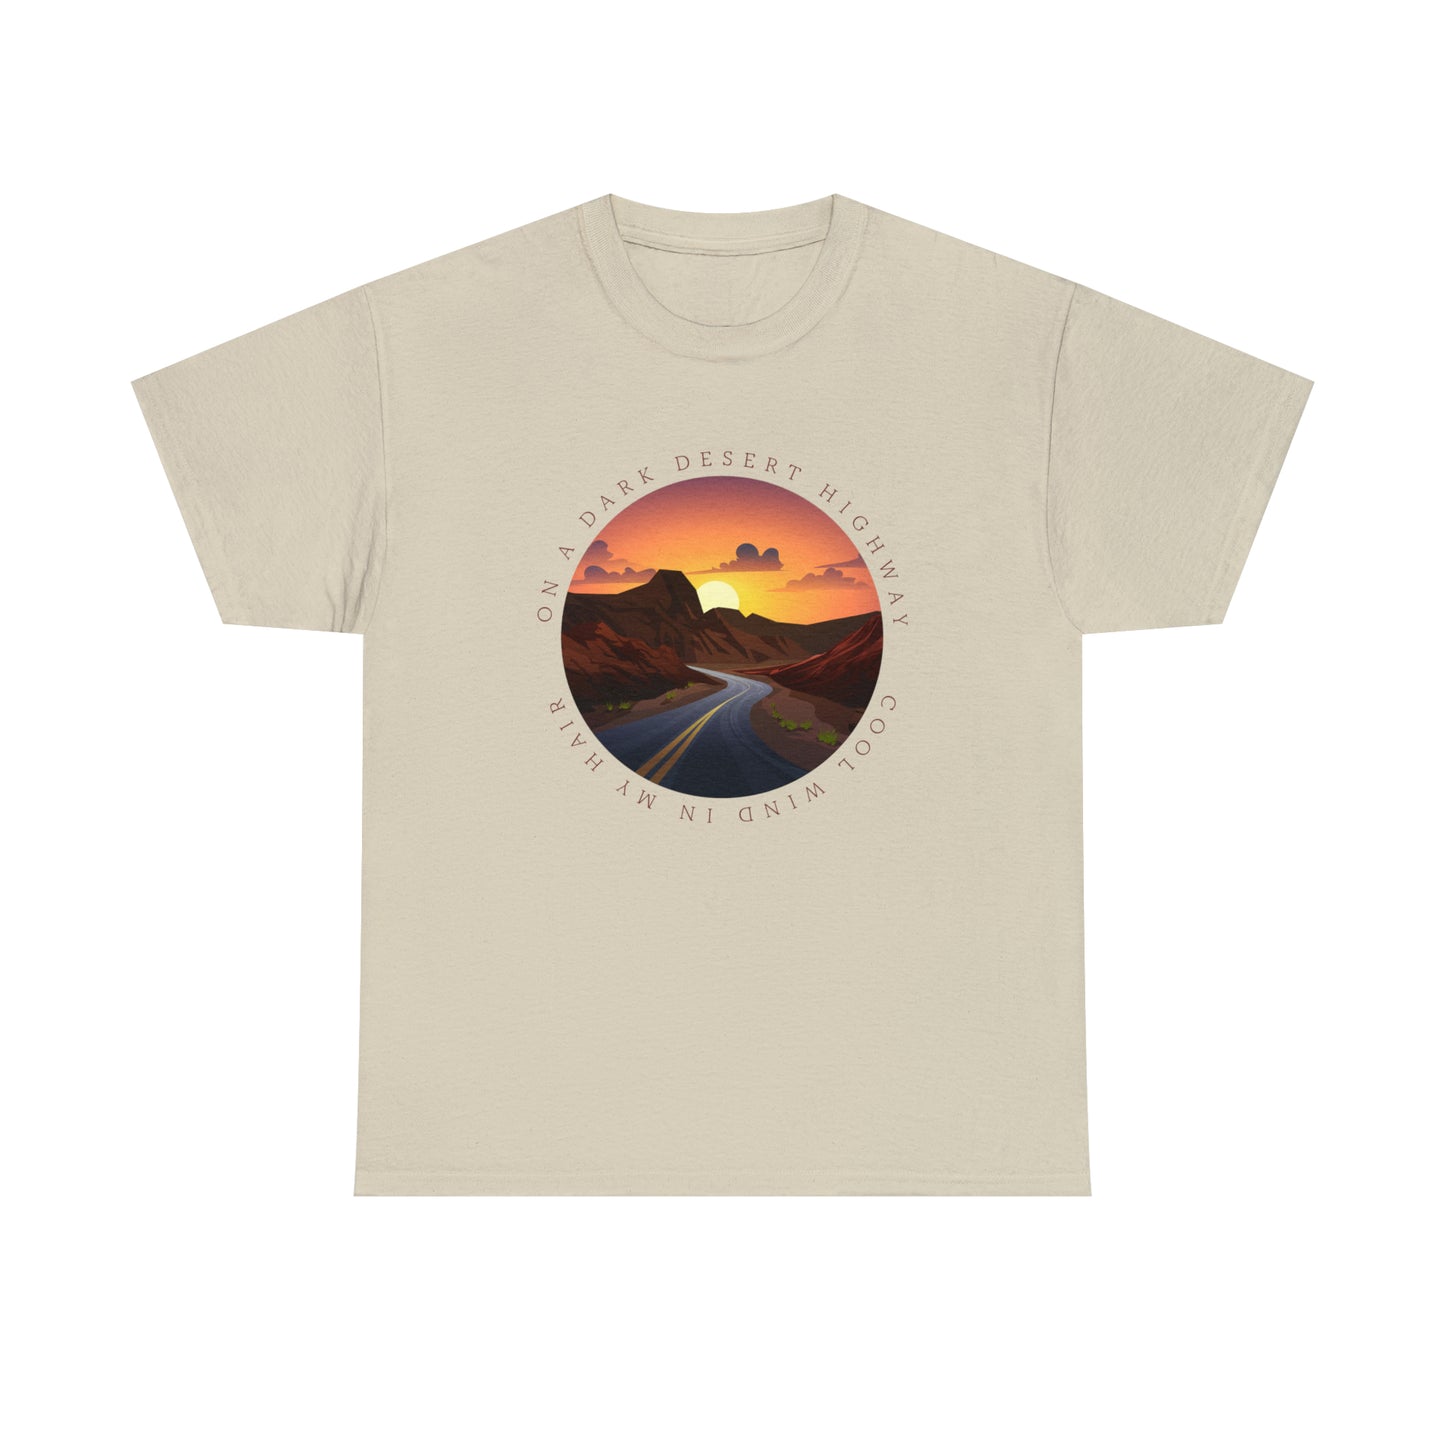 Desert T-Shirt For Song Lyrics TShirt For Musician T Shirt For Musical Quote Shirt For Music Lovers